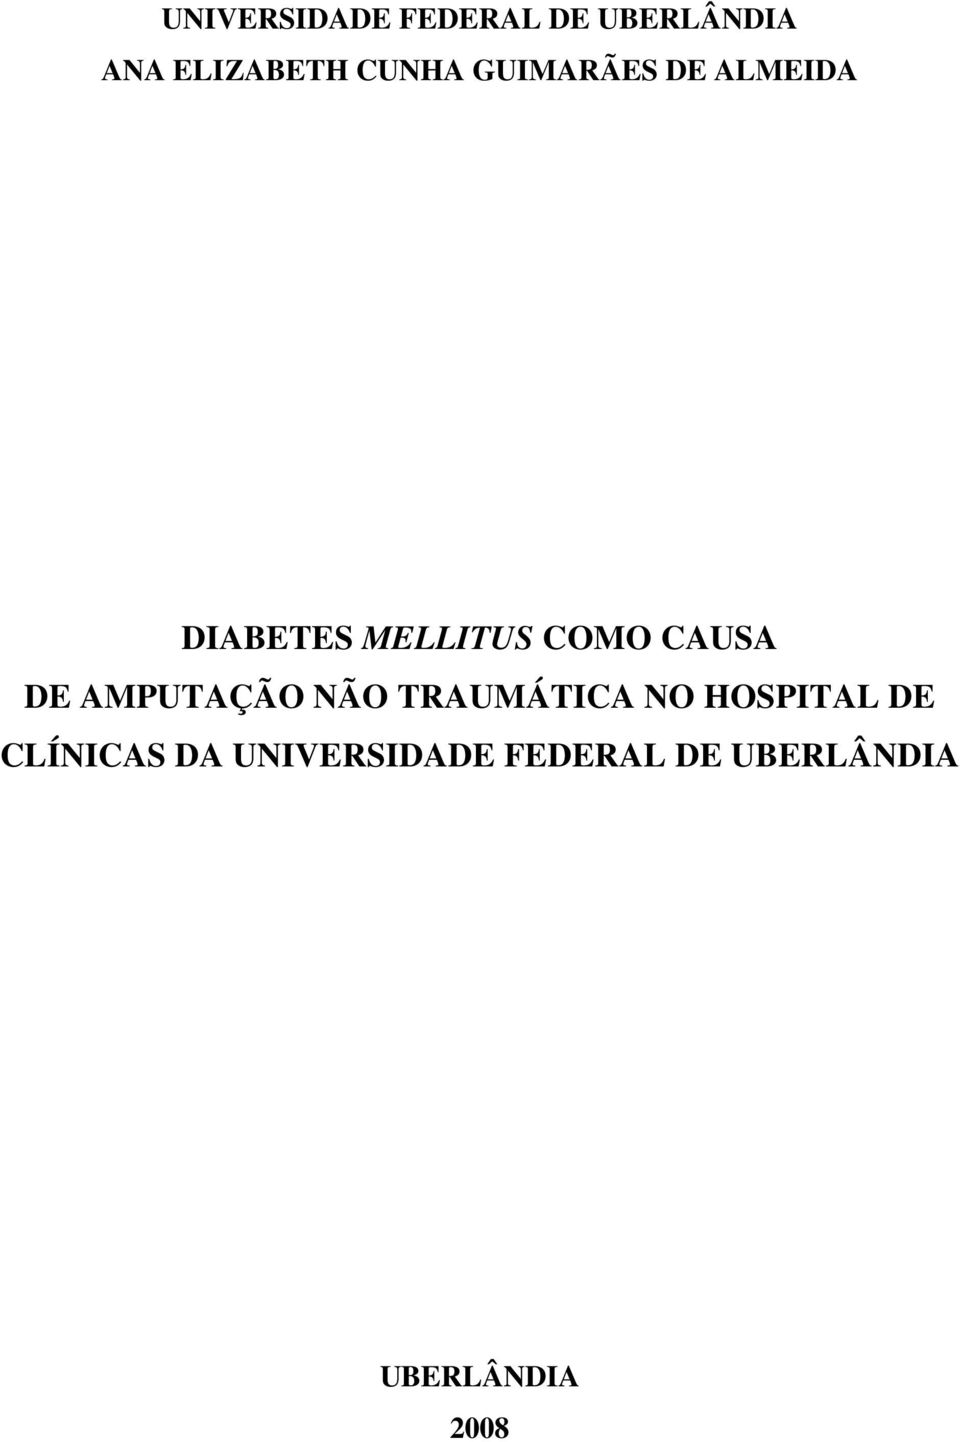 CAUSA DE AMPUTAÇÃO NÃO TRAUMÁTICA NO HOSPITAL DE